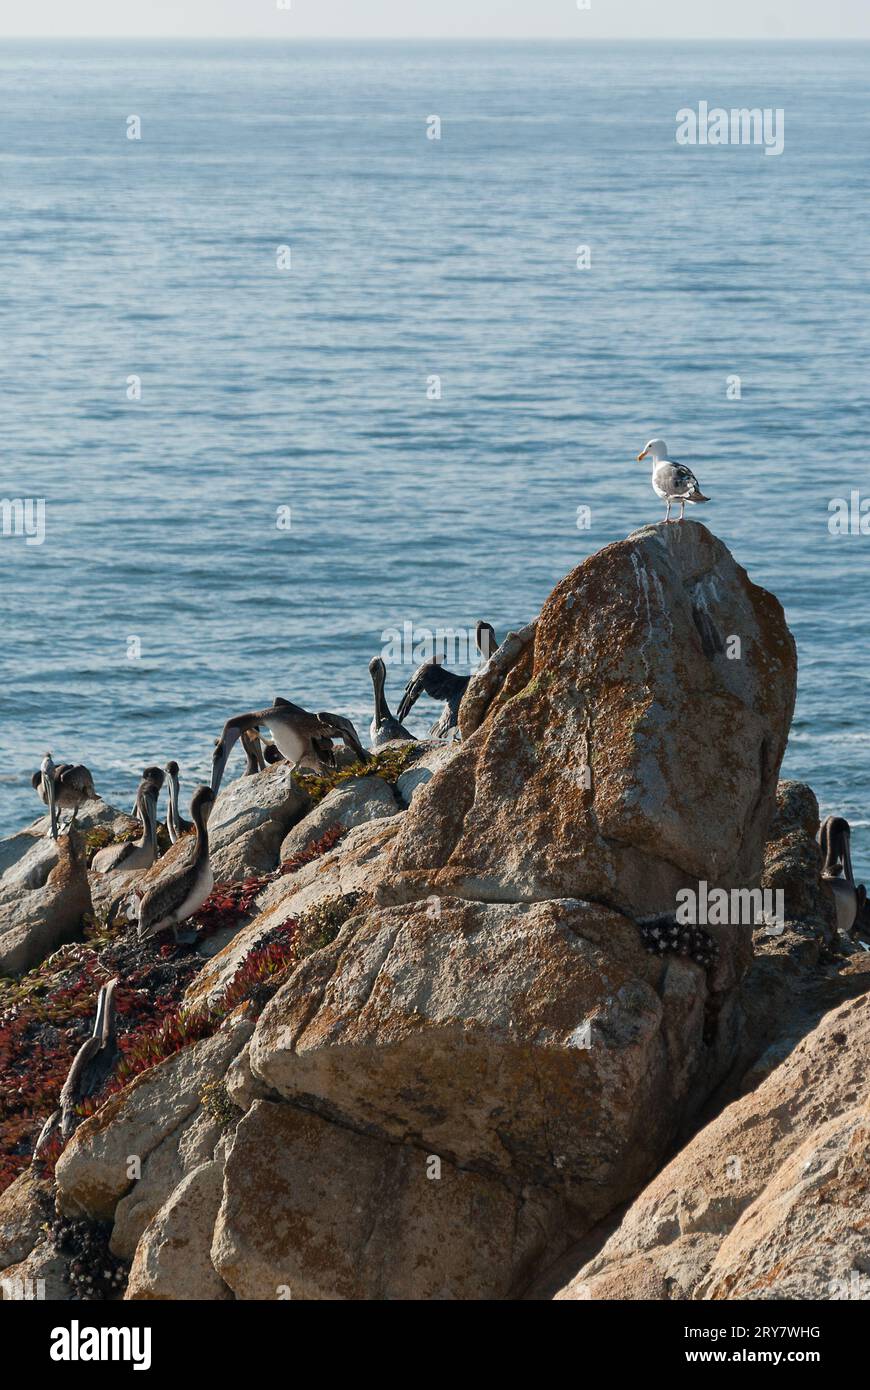 Stormo di pellicani e un gabbiano riposano su una scogliera affacciata sull'oceano Foto Stock